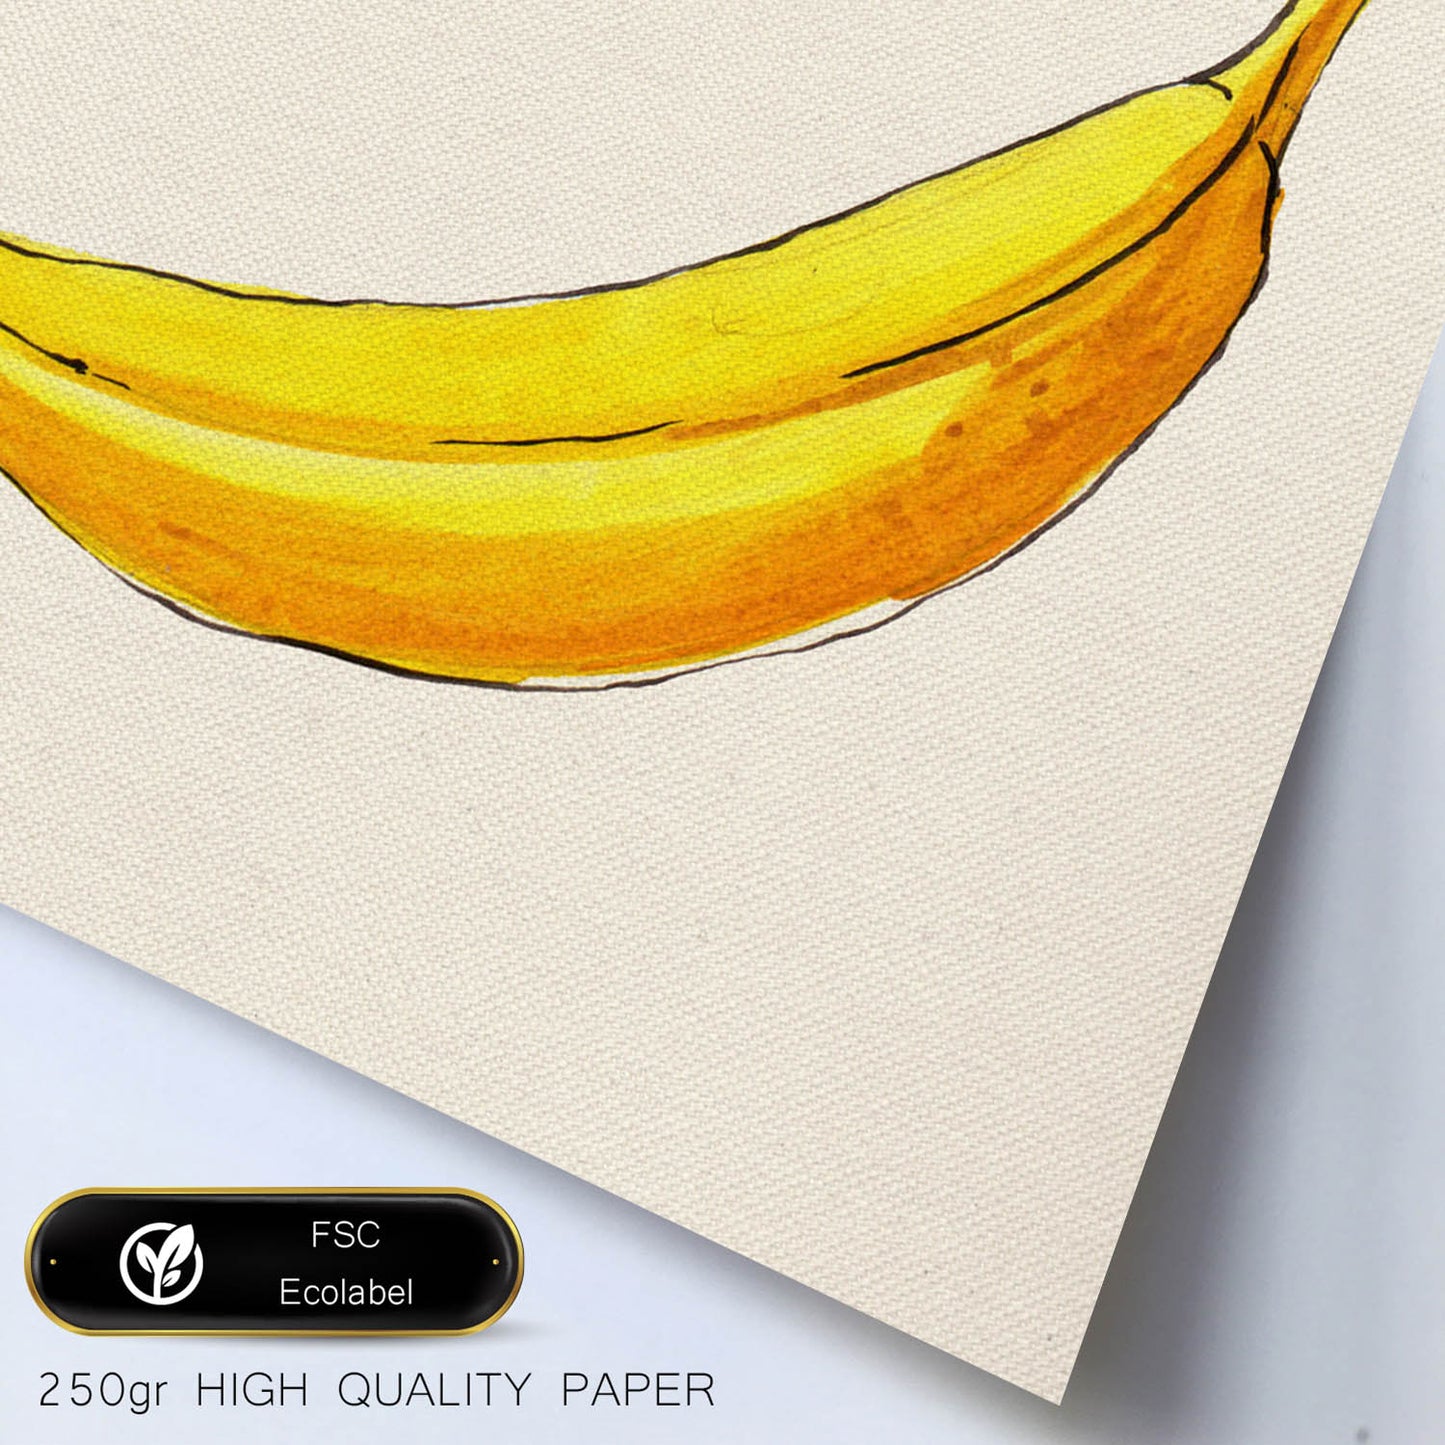 Poster cuadrado de Banana solitaria. Lámina de frutas y verduras de forma cuadrada, ilustrada con dibujos a color.-Artwork-Nacnic-Nacnic Estudio SL